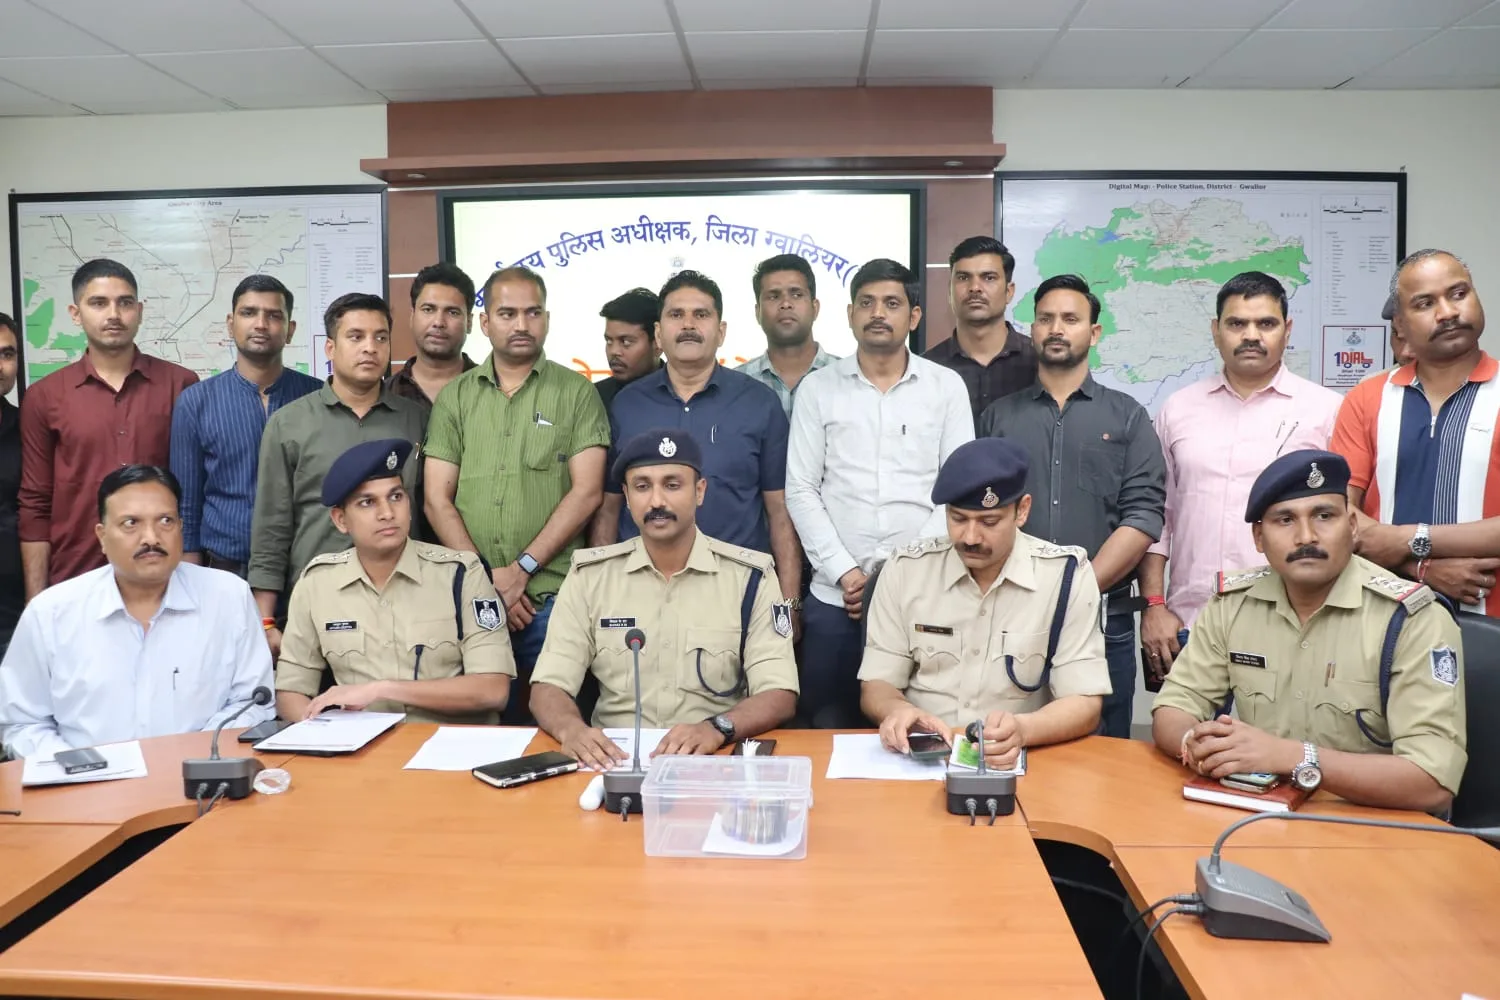 बेंगलुरू में लक्ष्मी ज्वैलर्स में लूट की कोशिश करने वाले तीन हथियारबंद बदमाशों को क्राइम ब्रांच व कर्नाटक पुलिस ने किया गिरफ्तार | New India Times